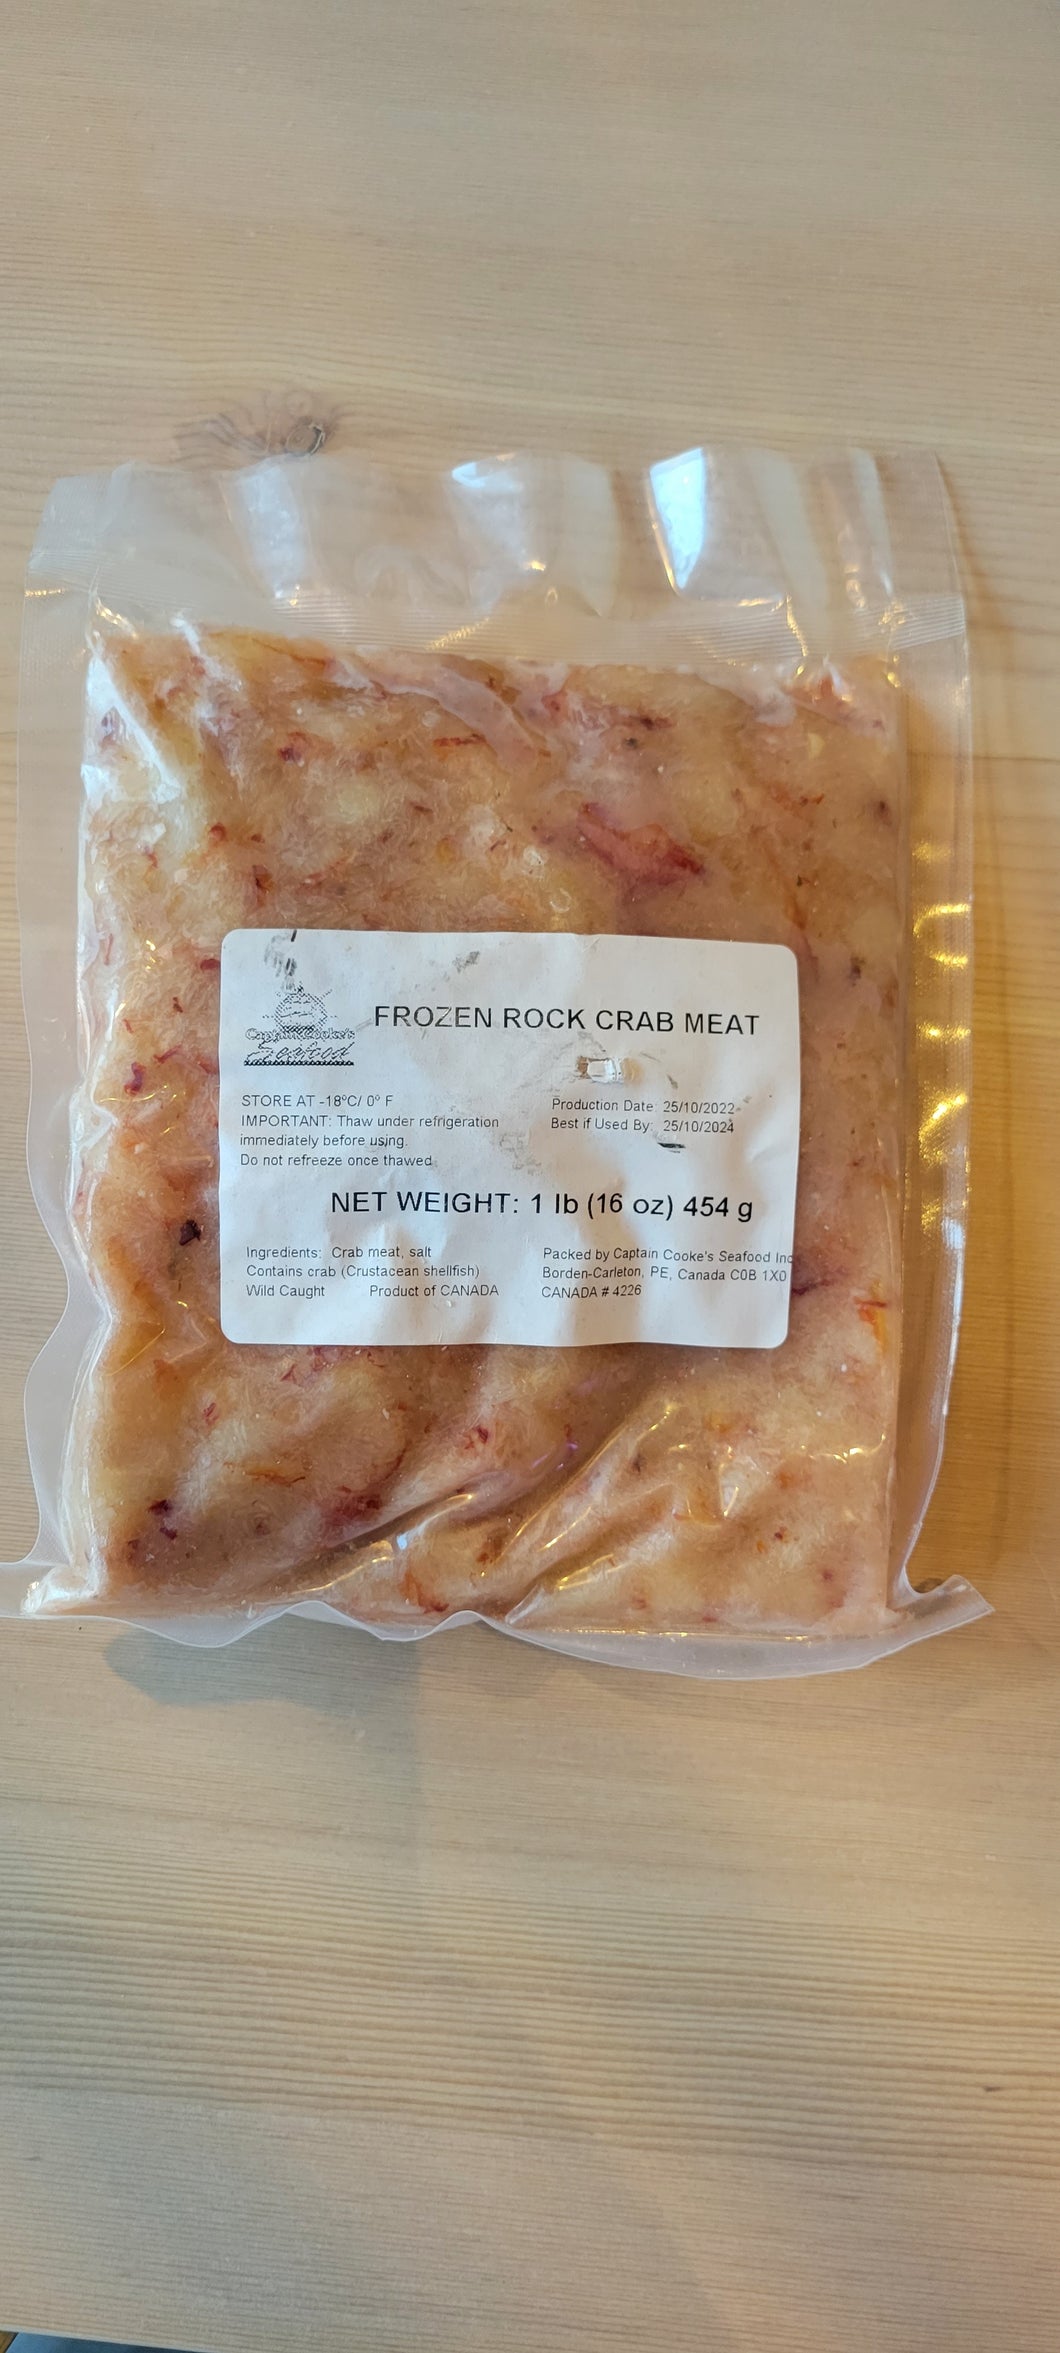 1lb PEI Rock Crab Meat